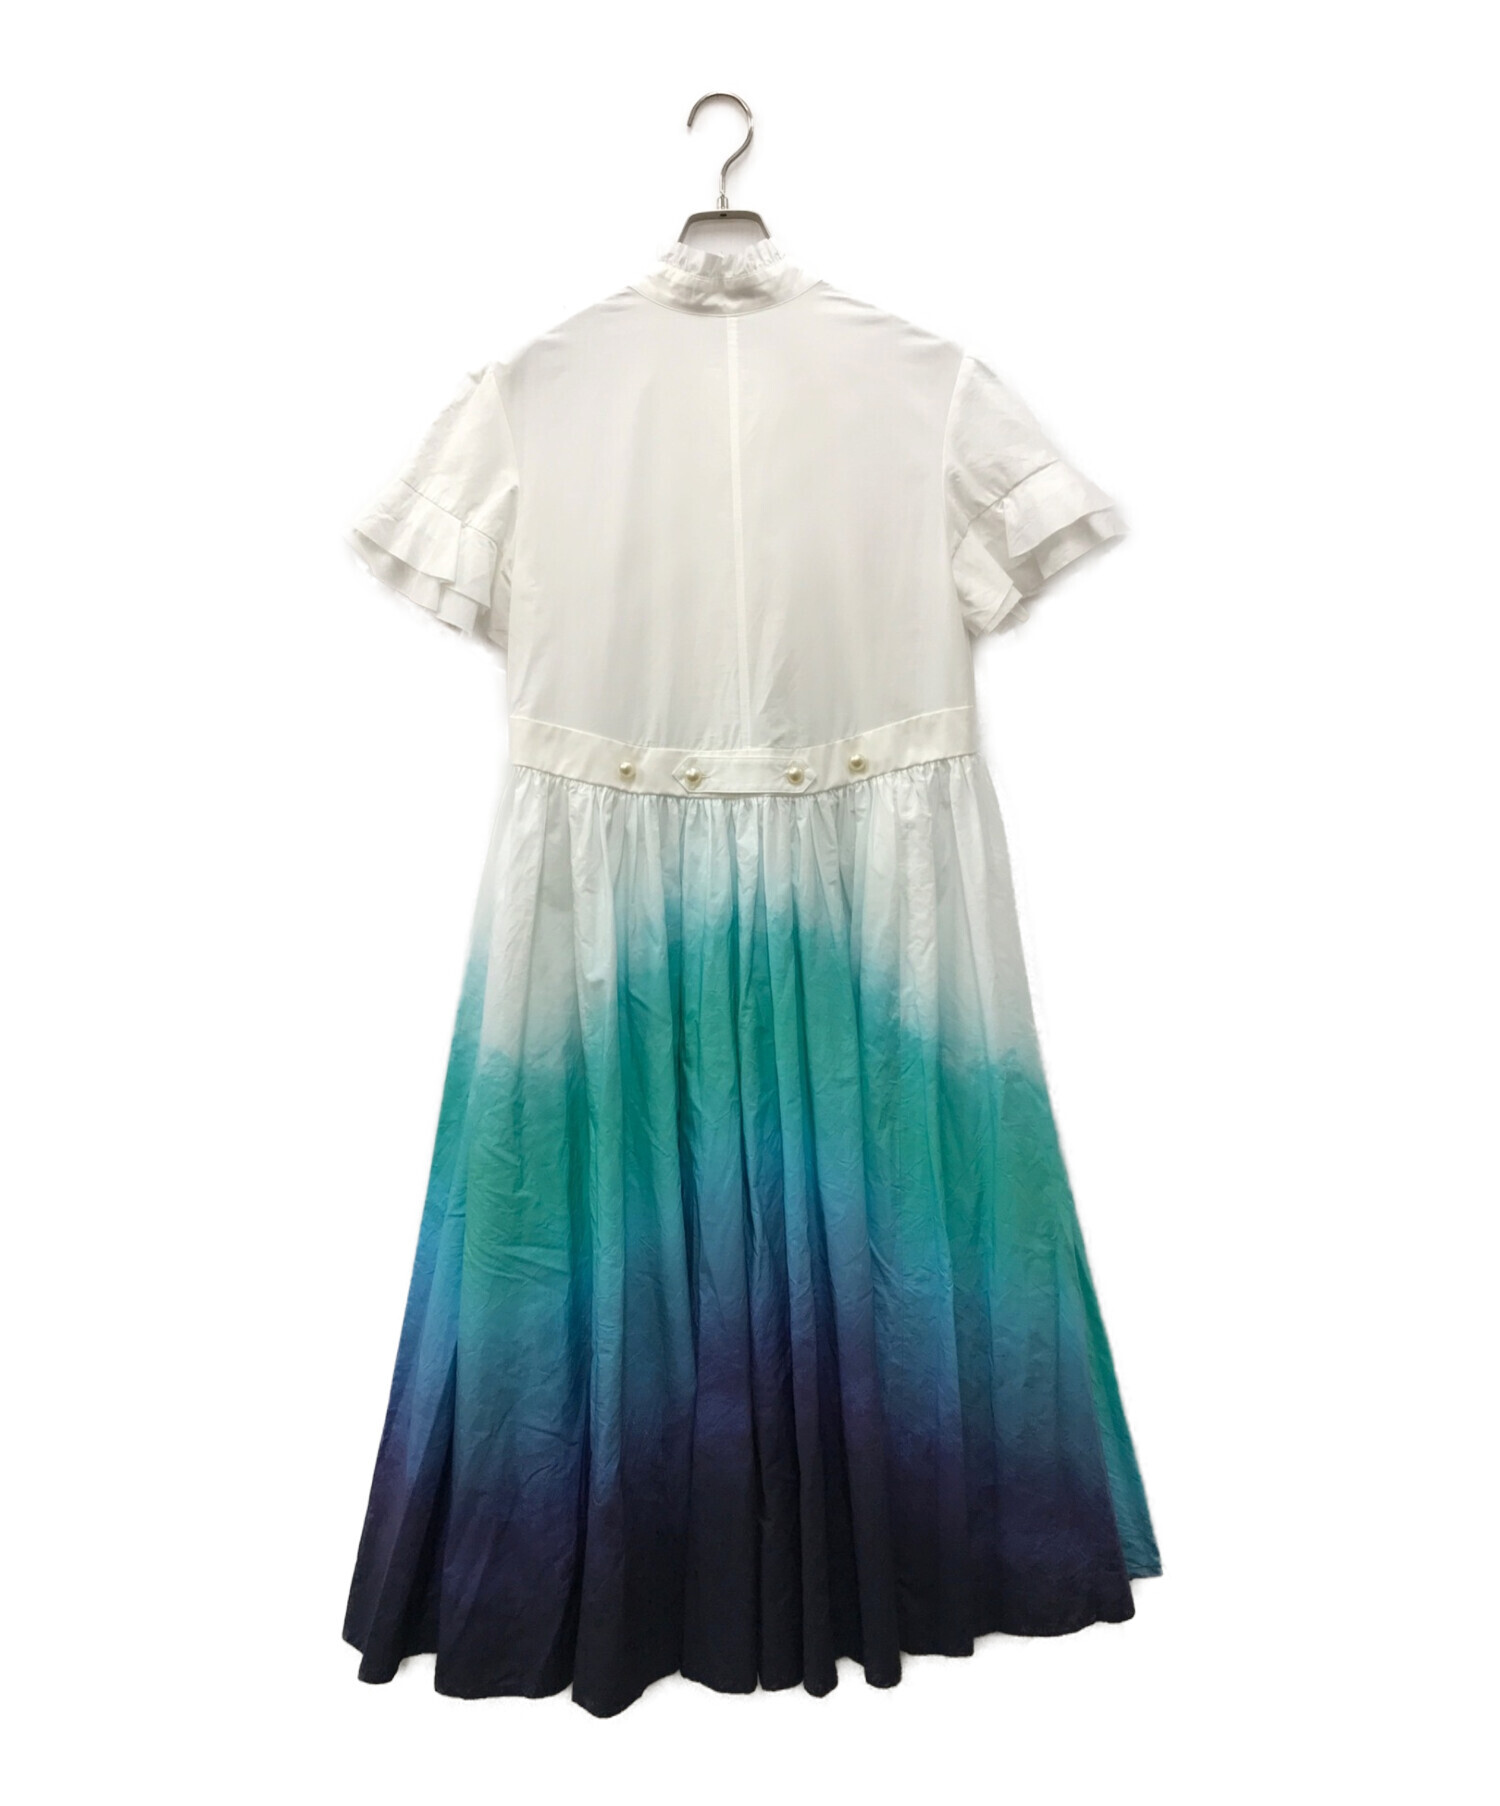 美品 hazama 見えないものを見ようとして見上げた夜空のシャツドレス柄デザインその他